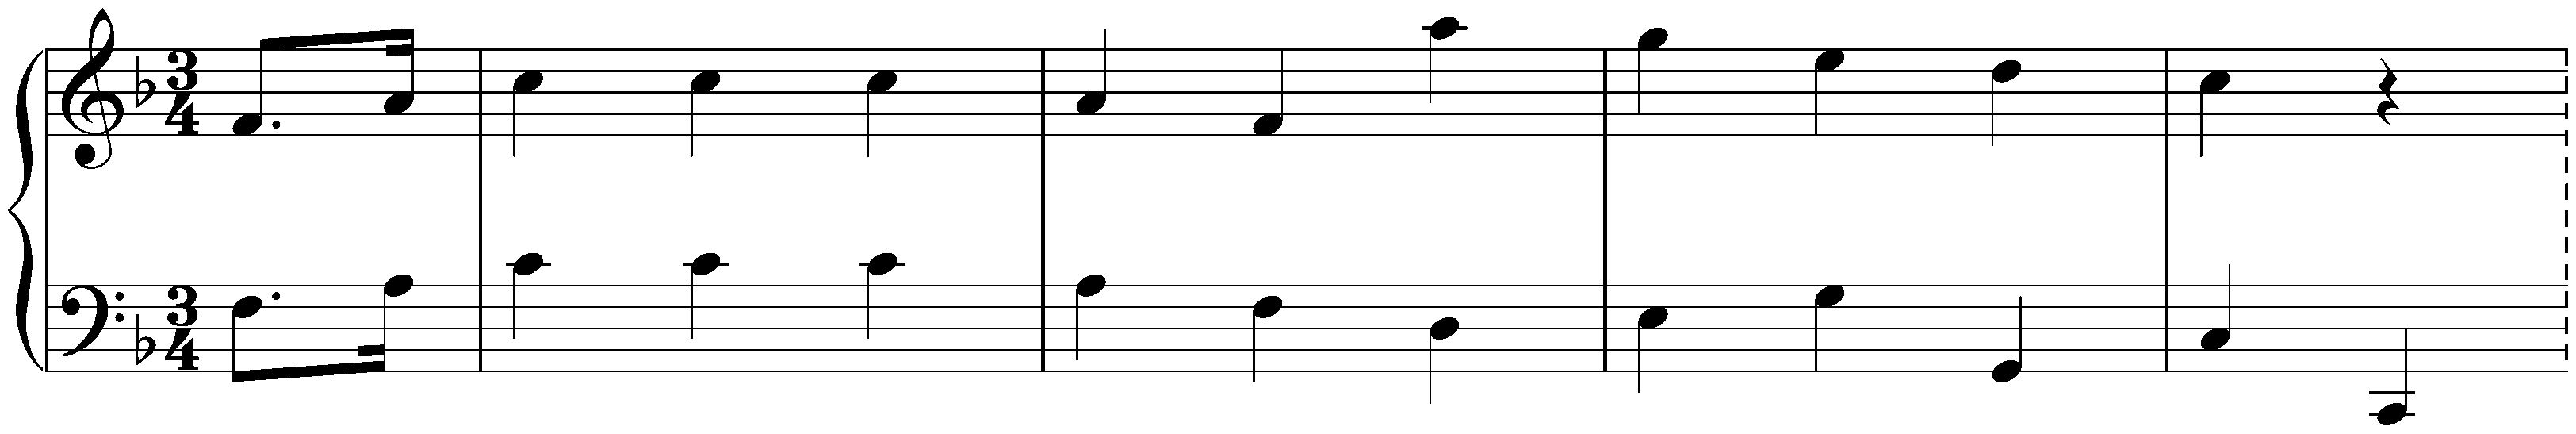 Minuet in F major, WoO 217